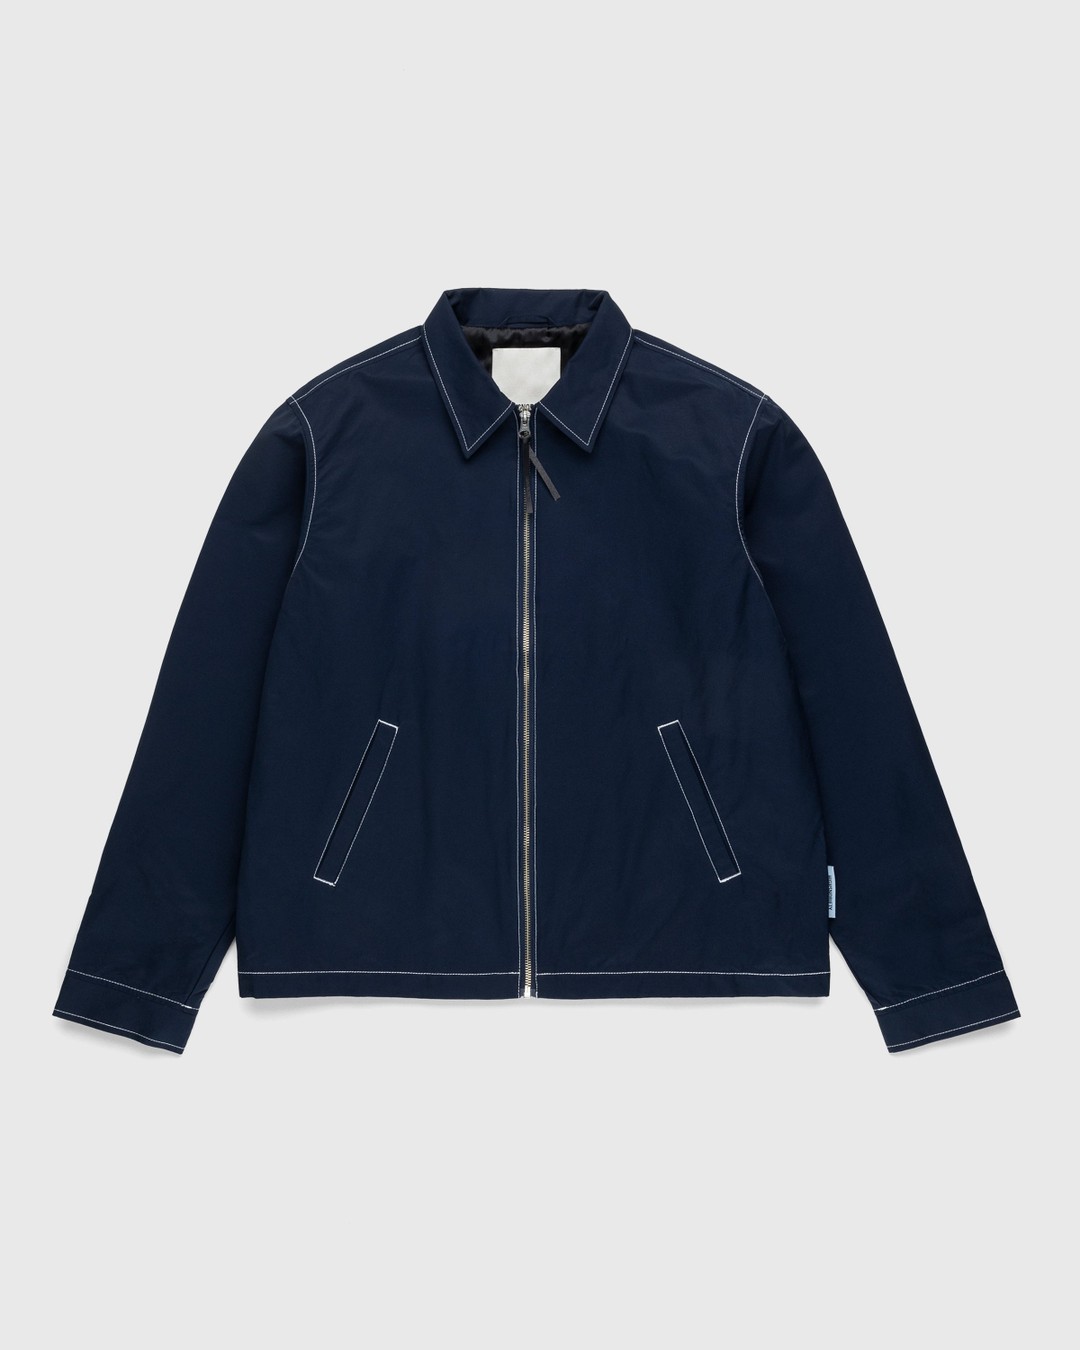 Highsnobiety – Brushed Nylon Jacket Navy - Outerwear - Blue - Image 1